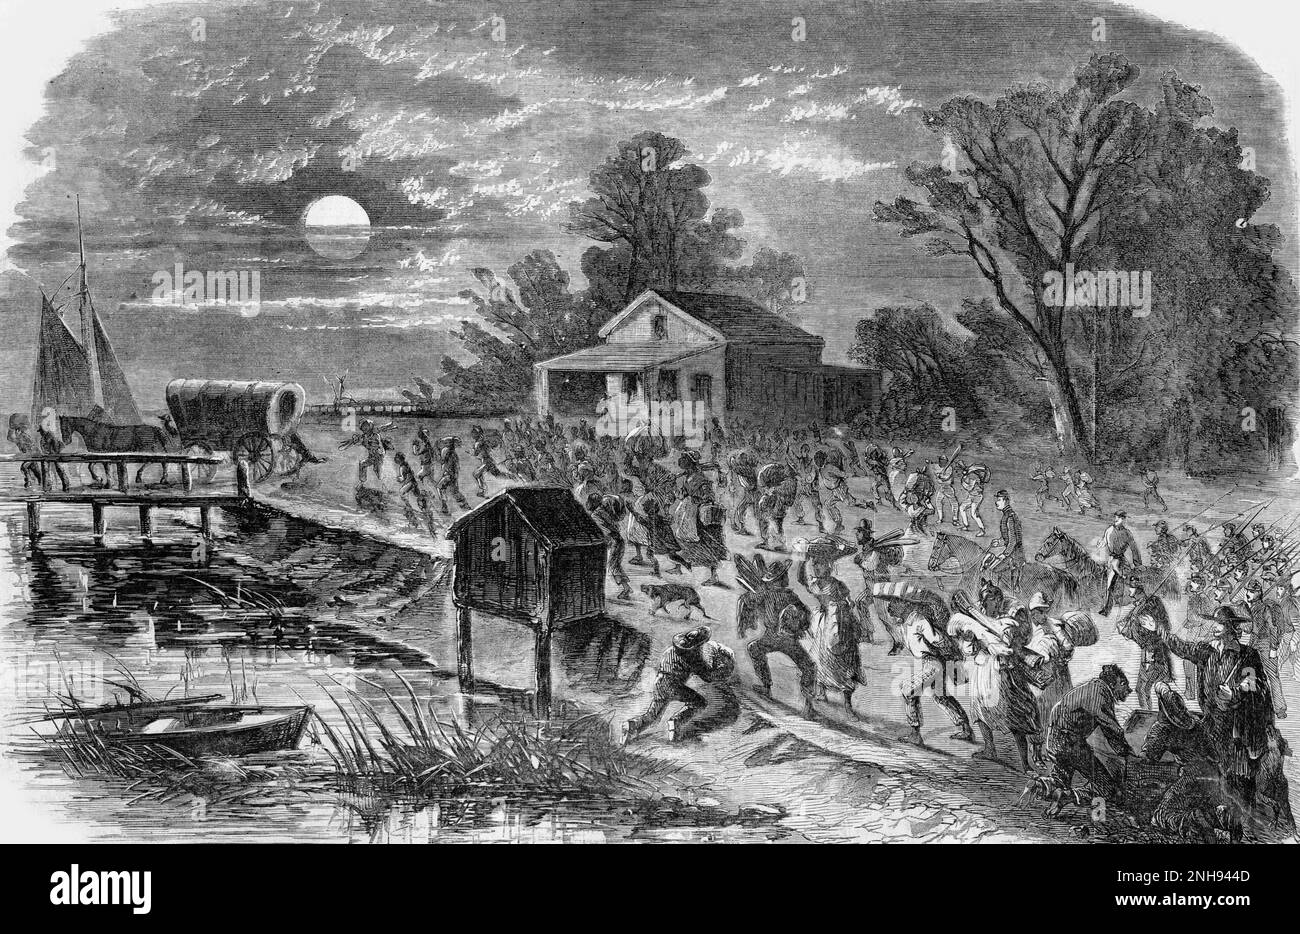 Flüchtige Sklaven, die ihre Besitztümer tragen und nachts am Flussufer entlang zu einer Brücke laufen, die während des Bürgerkriegs von Hampton, Virginia, nach Fort Monroe führt. Unter ihnen sind einige Soldaten der Union. Illustration aus Harper's Weekly, 17. August 1861. Stockfoto